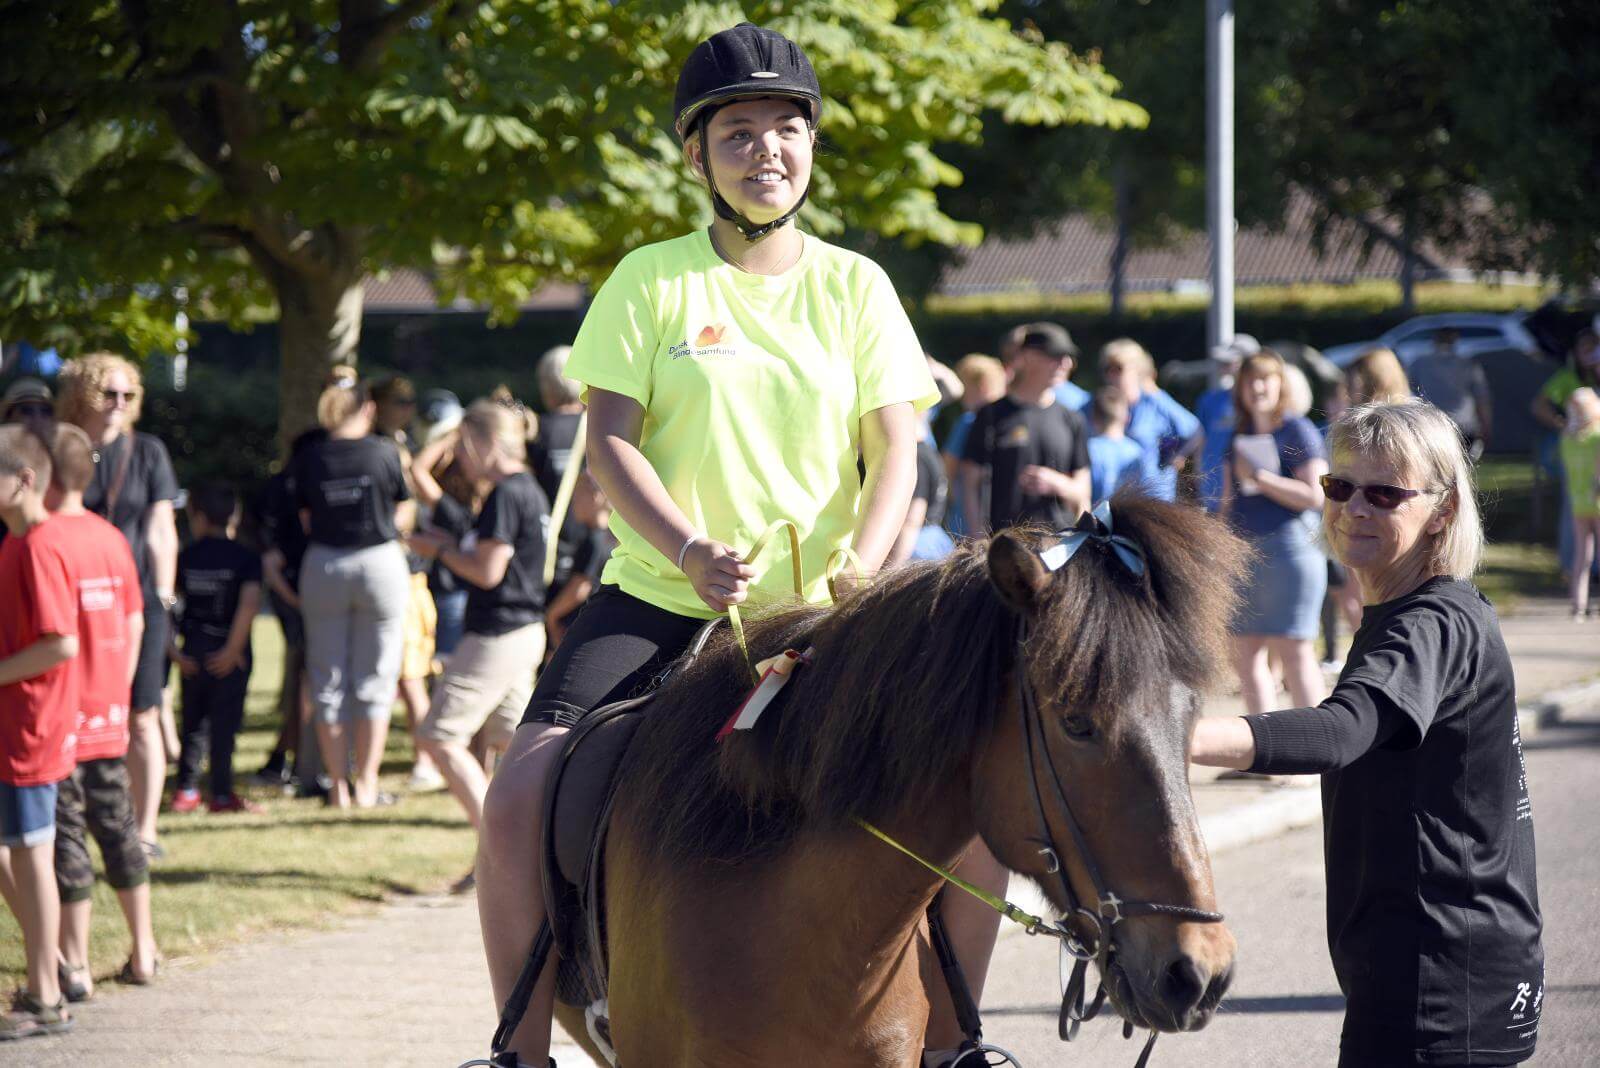 En elev er kommet højt til vejrs på en pony. I baggrunden er de andre elever ved at stille op til indmarch